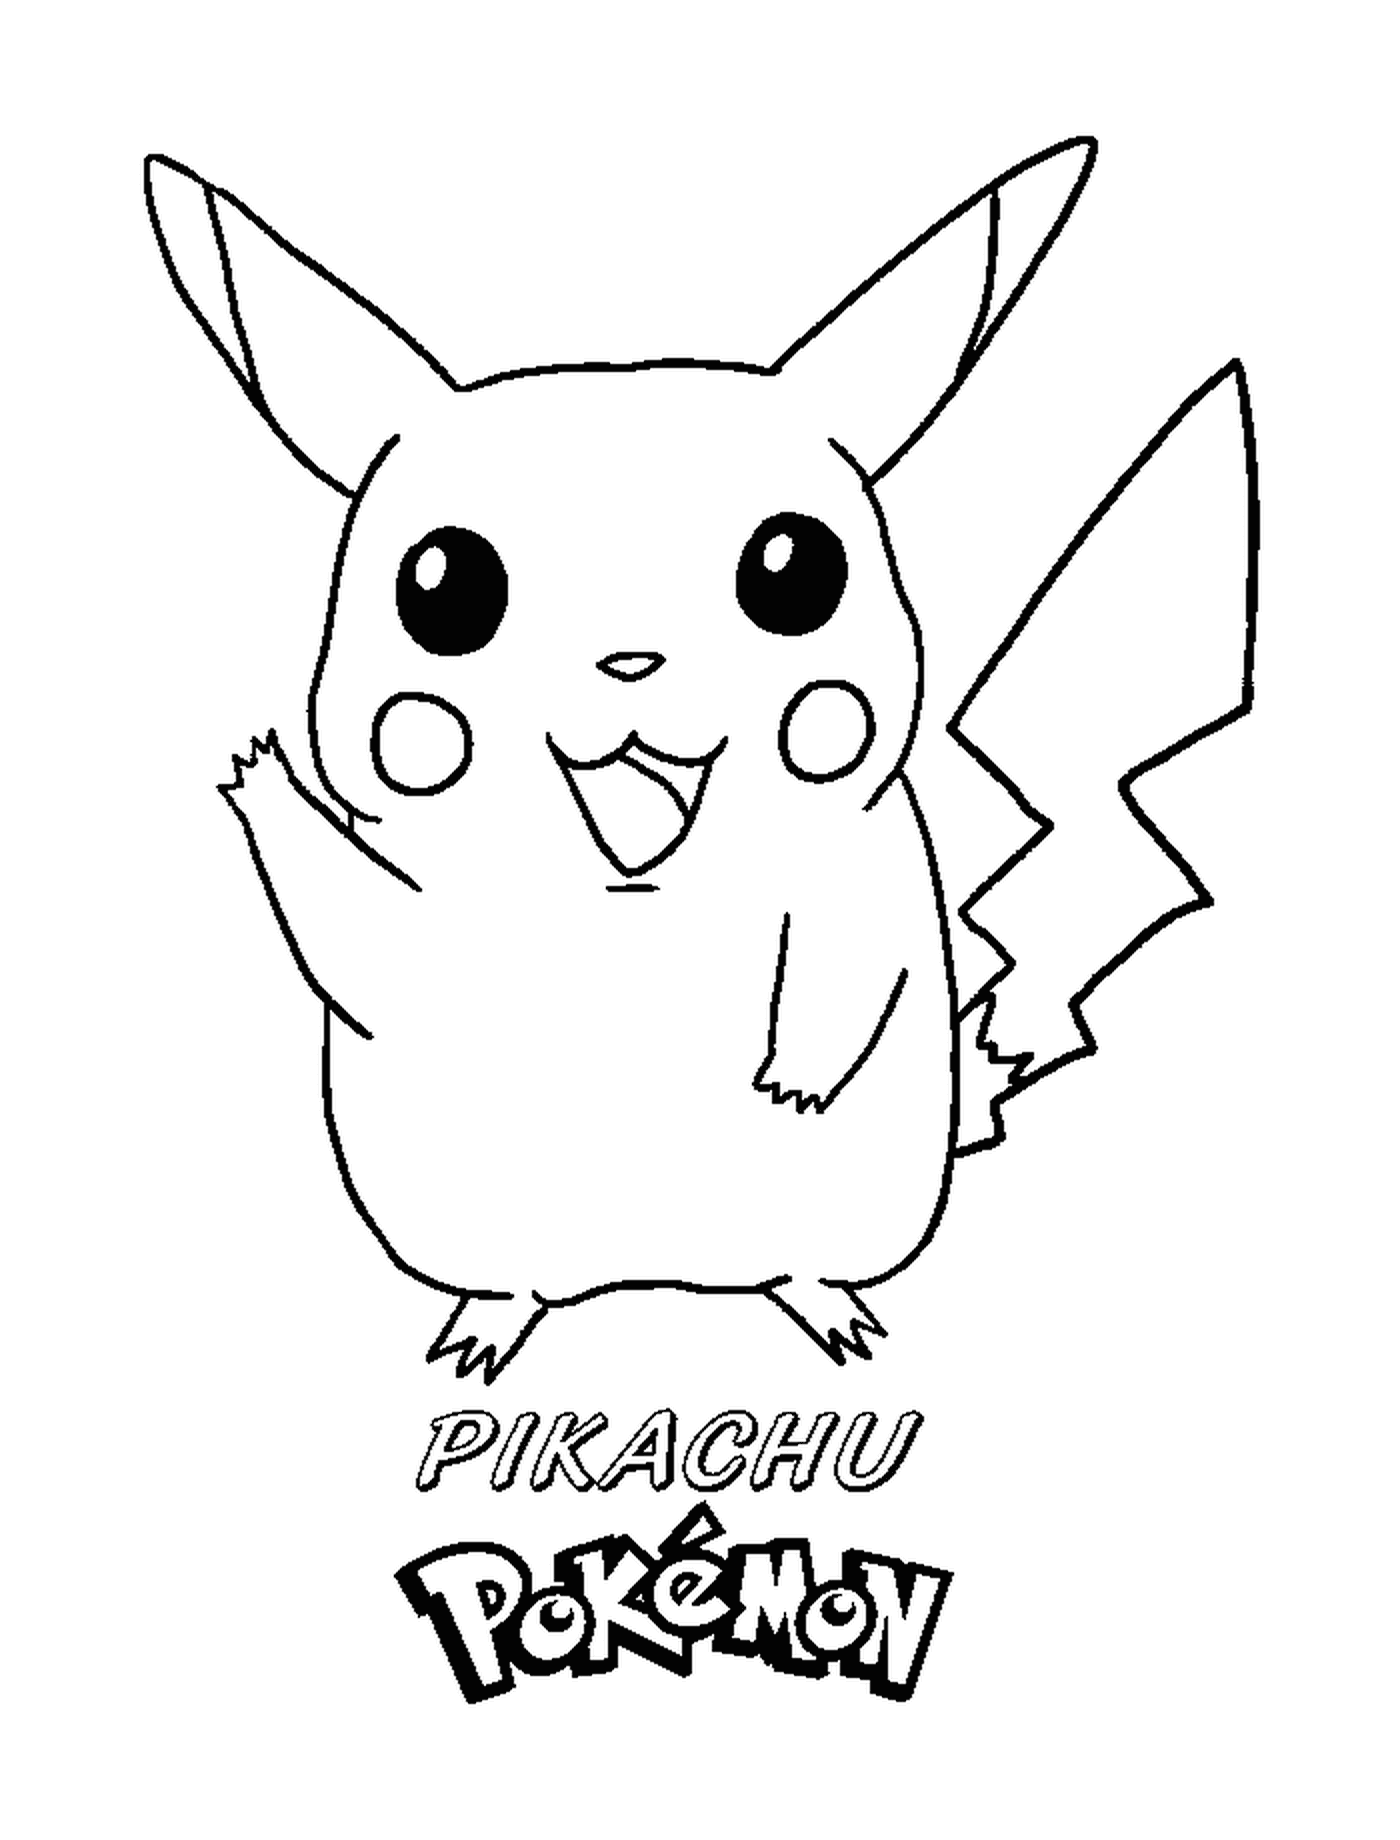  Pikachu com uma expressão alegre 